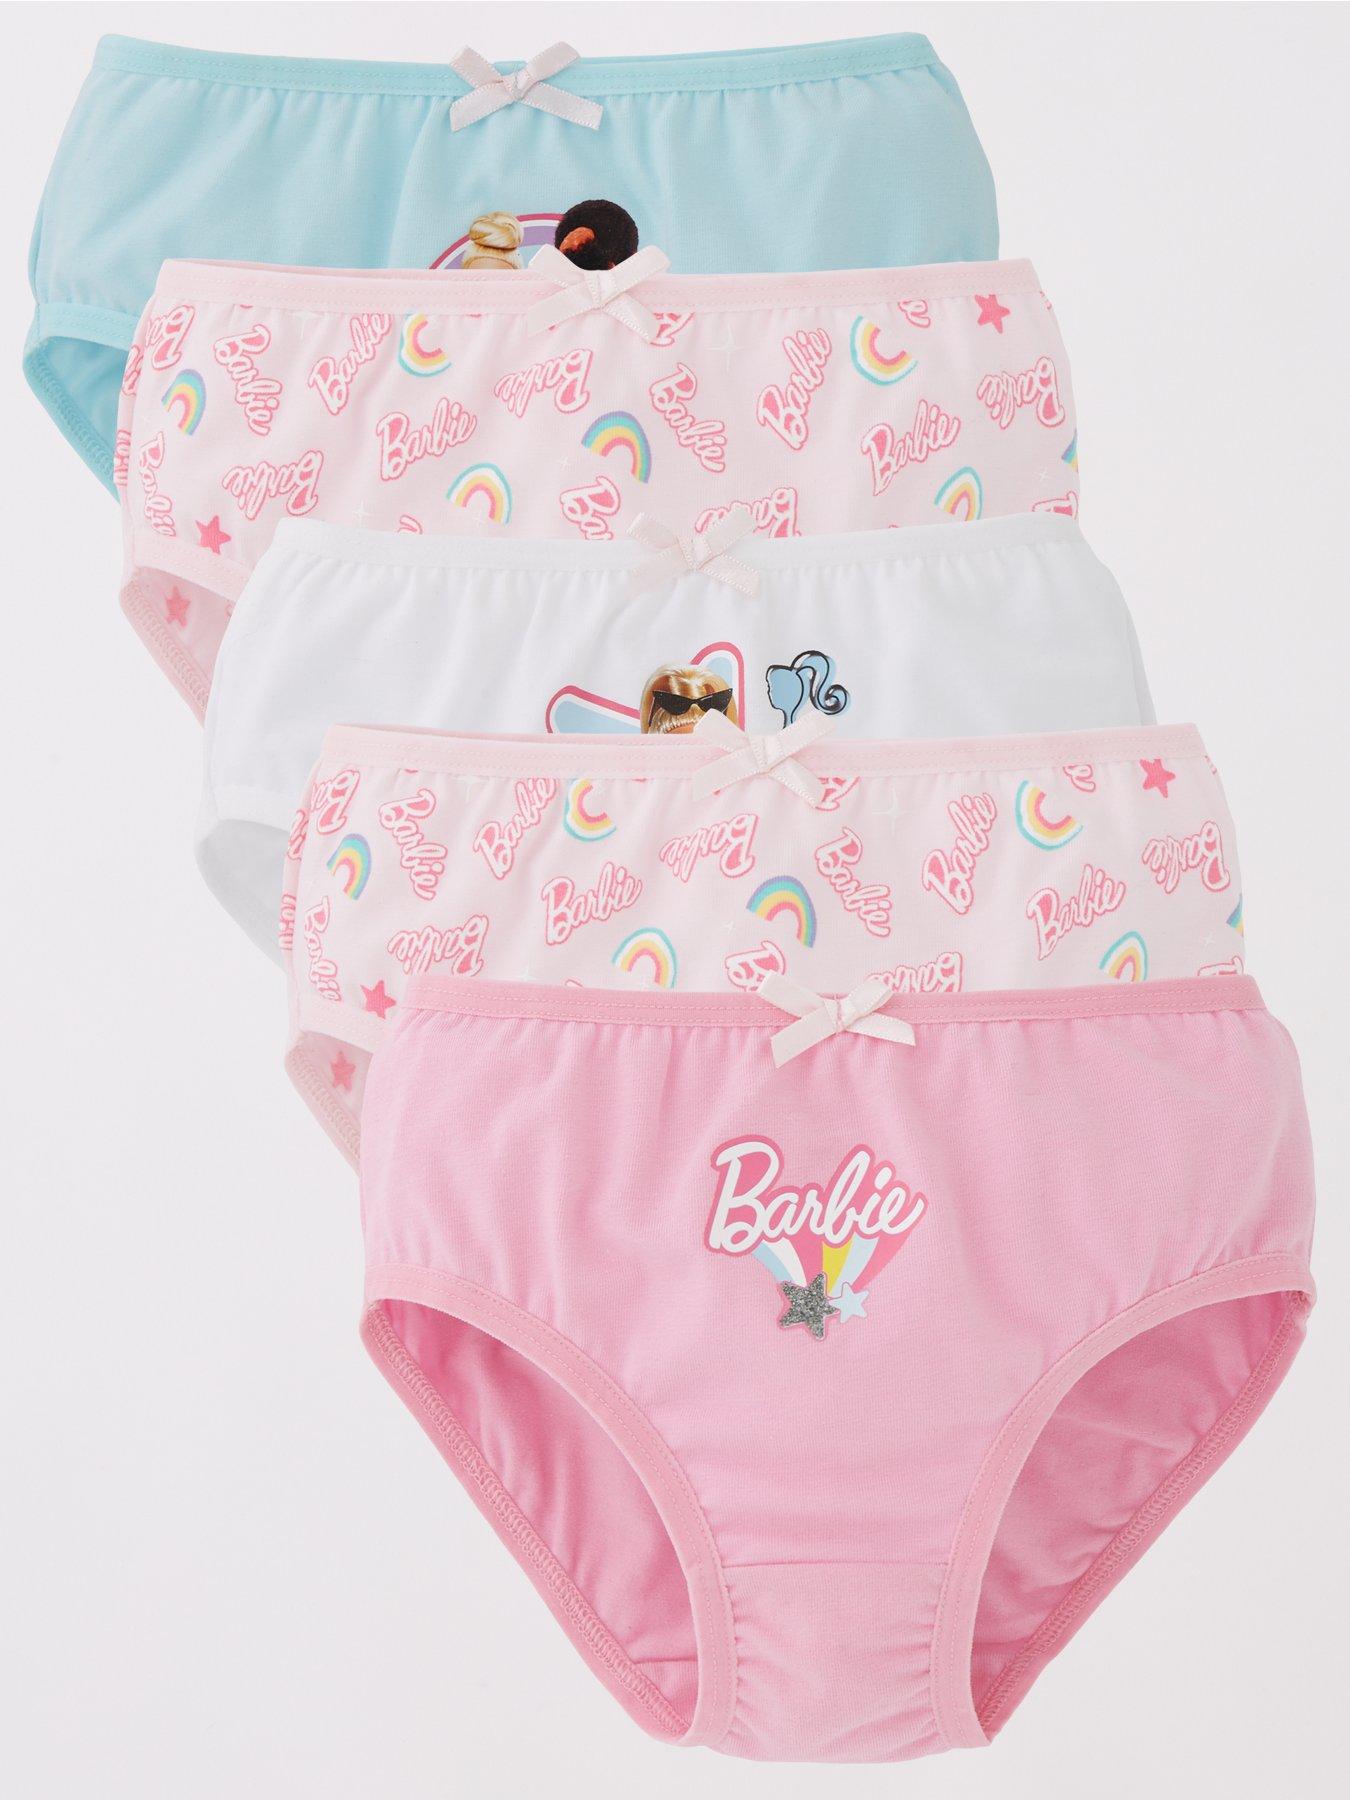 Peppa Pig Knickers 5 Pack Kids Girls 18 24 Months 2-7 Years Multipack  Underwear